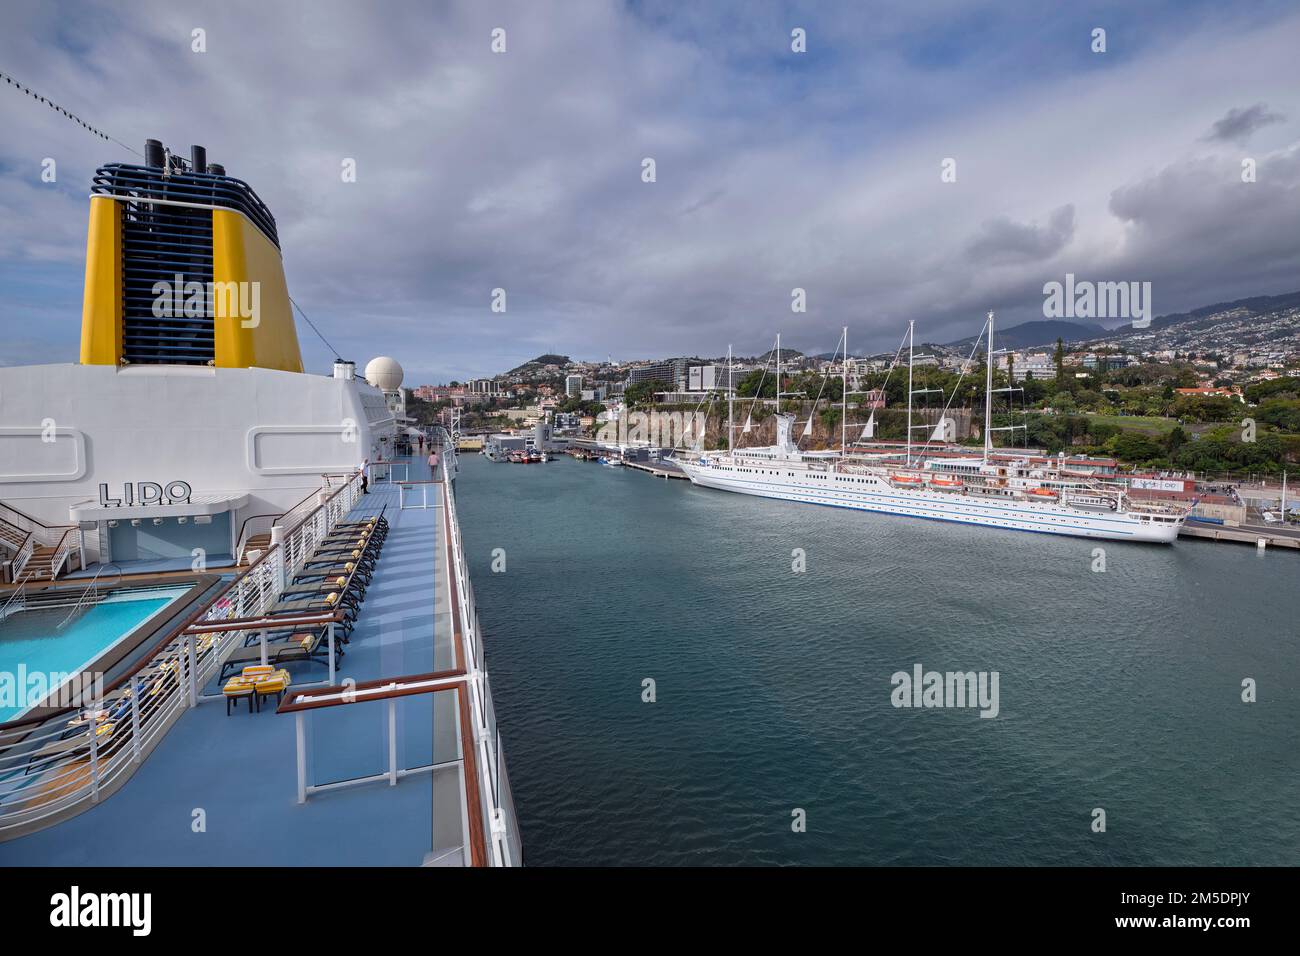 Club Med 2, goélette à cinq mâts, vue de Saga Spirit of Discovery. Funchal, Madère. Banque D'Images